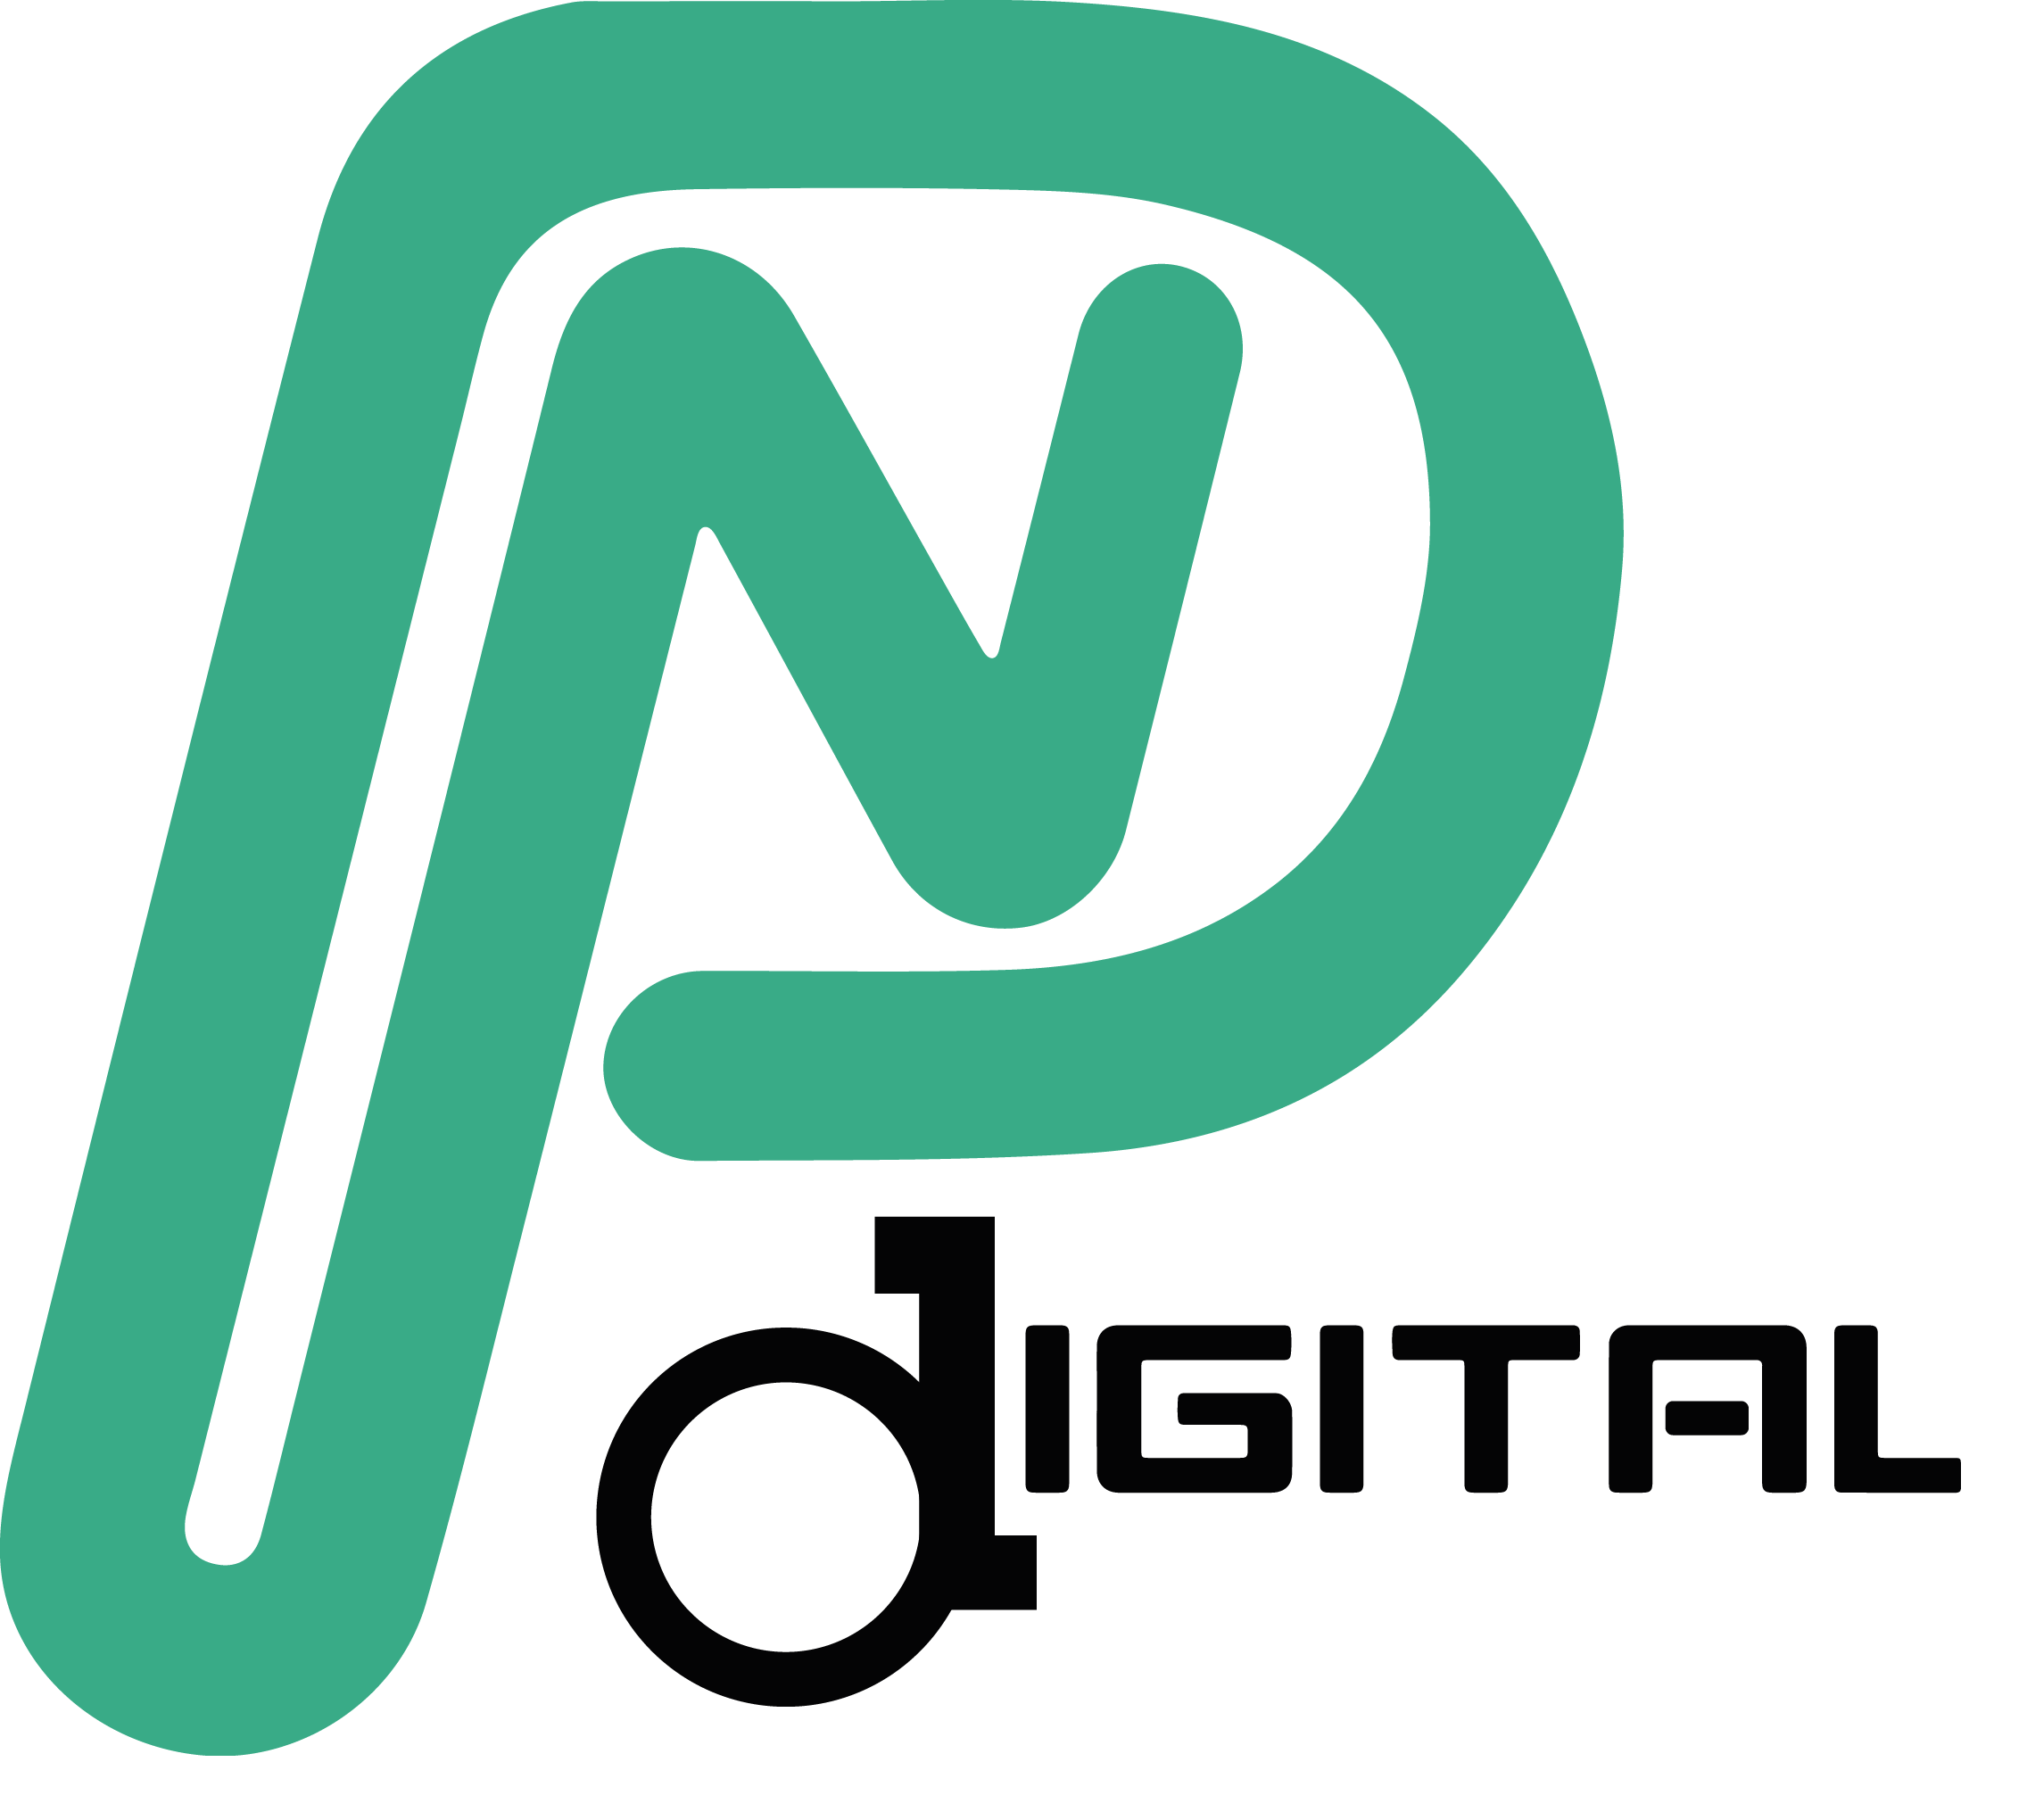 PNdigital Ltd profile on Qualified.One